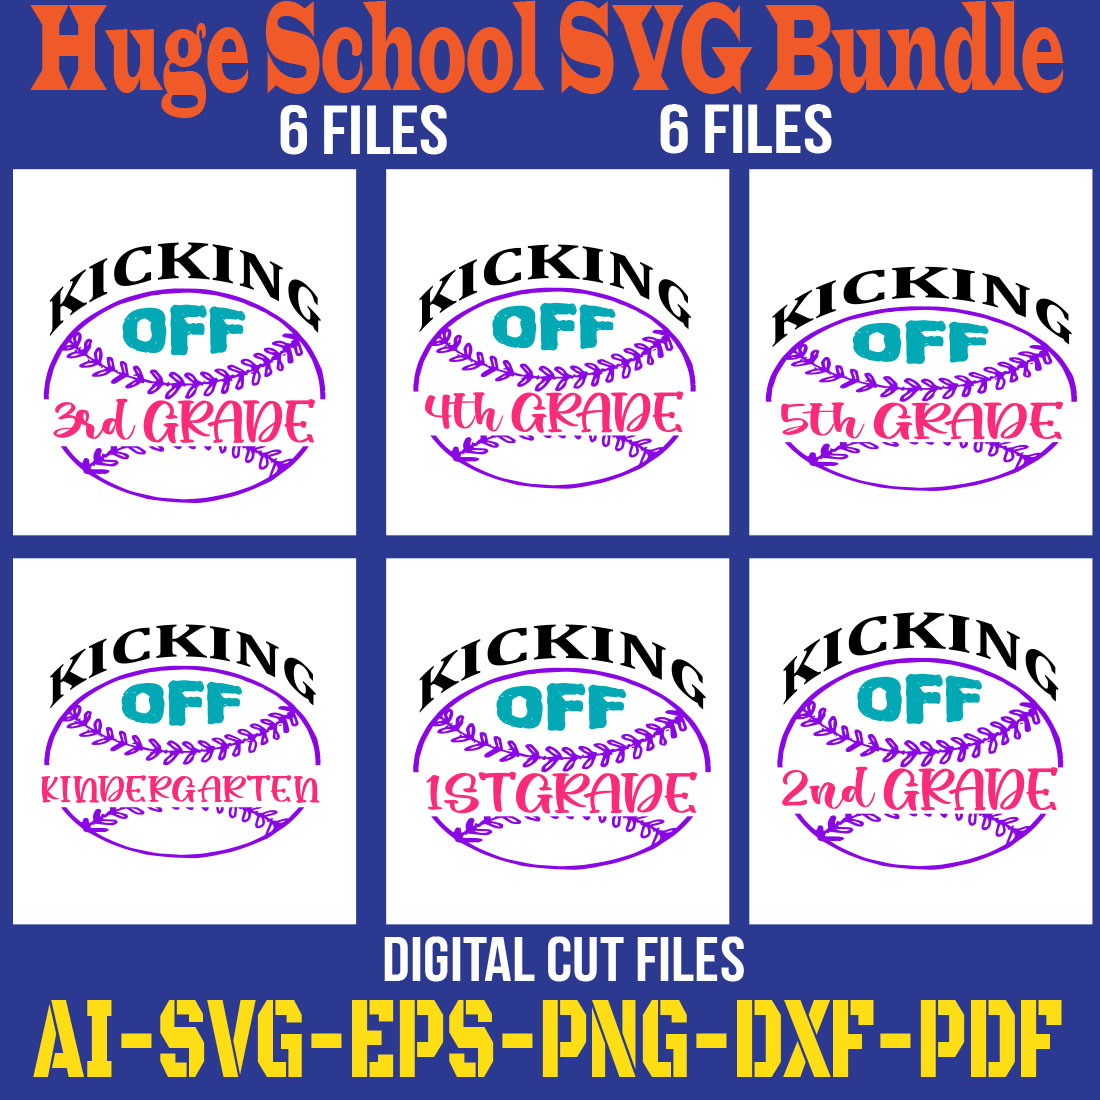 Huge School SVG Bundle cover image.